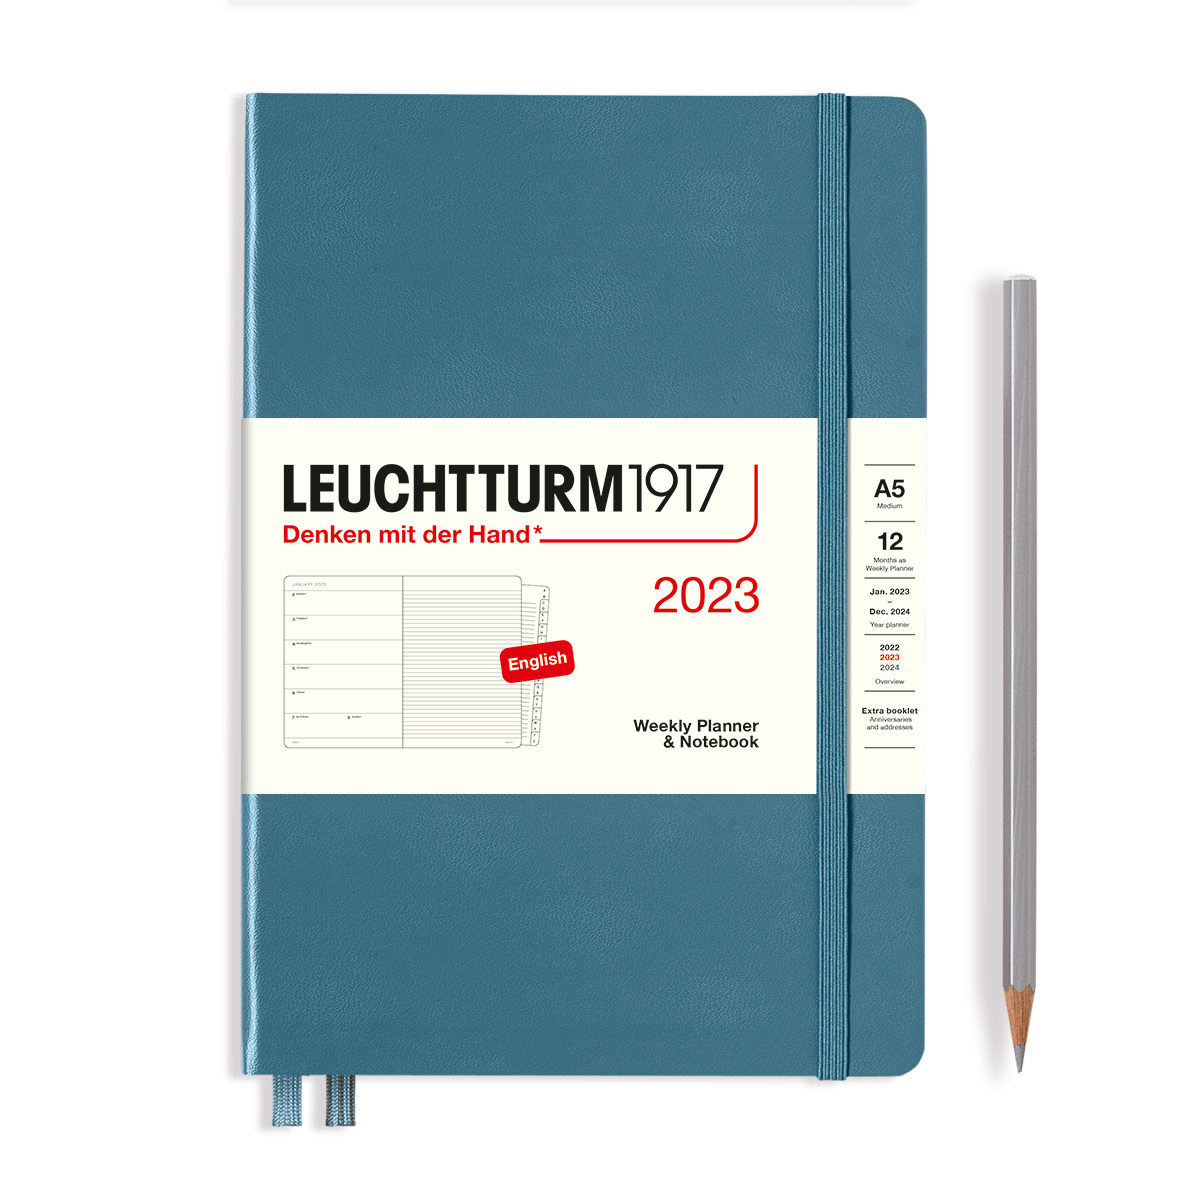 Еженедельник датир. Leuchtturm1917 Medium A5 на 2023г, 72л, тв. обл, цвет: Синий Камень + алфавитная Lecht-365887